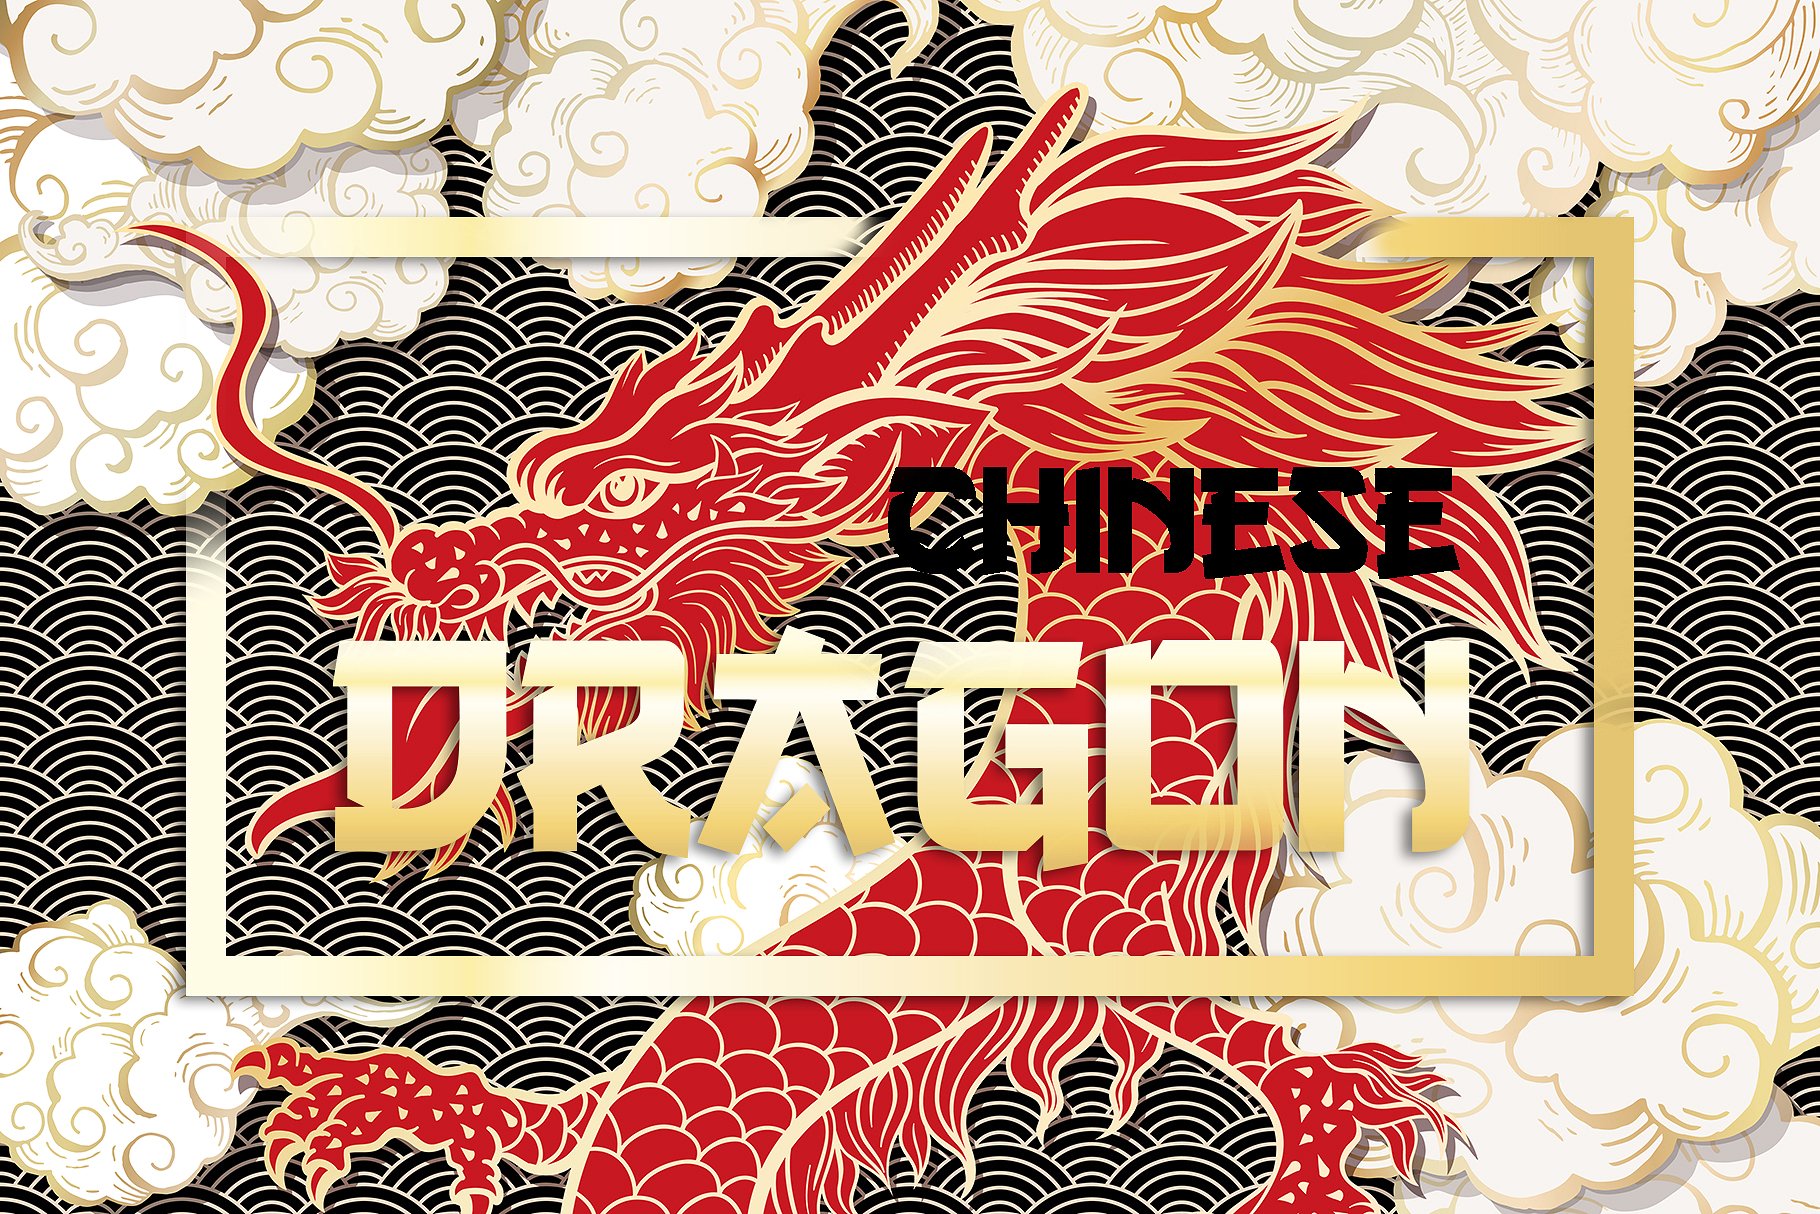 手绘中国风格中国龙AI矢量插图 Hand Drawn Chinese Style Chinese Dragon Illustrator Vector illustration插图